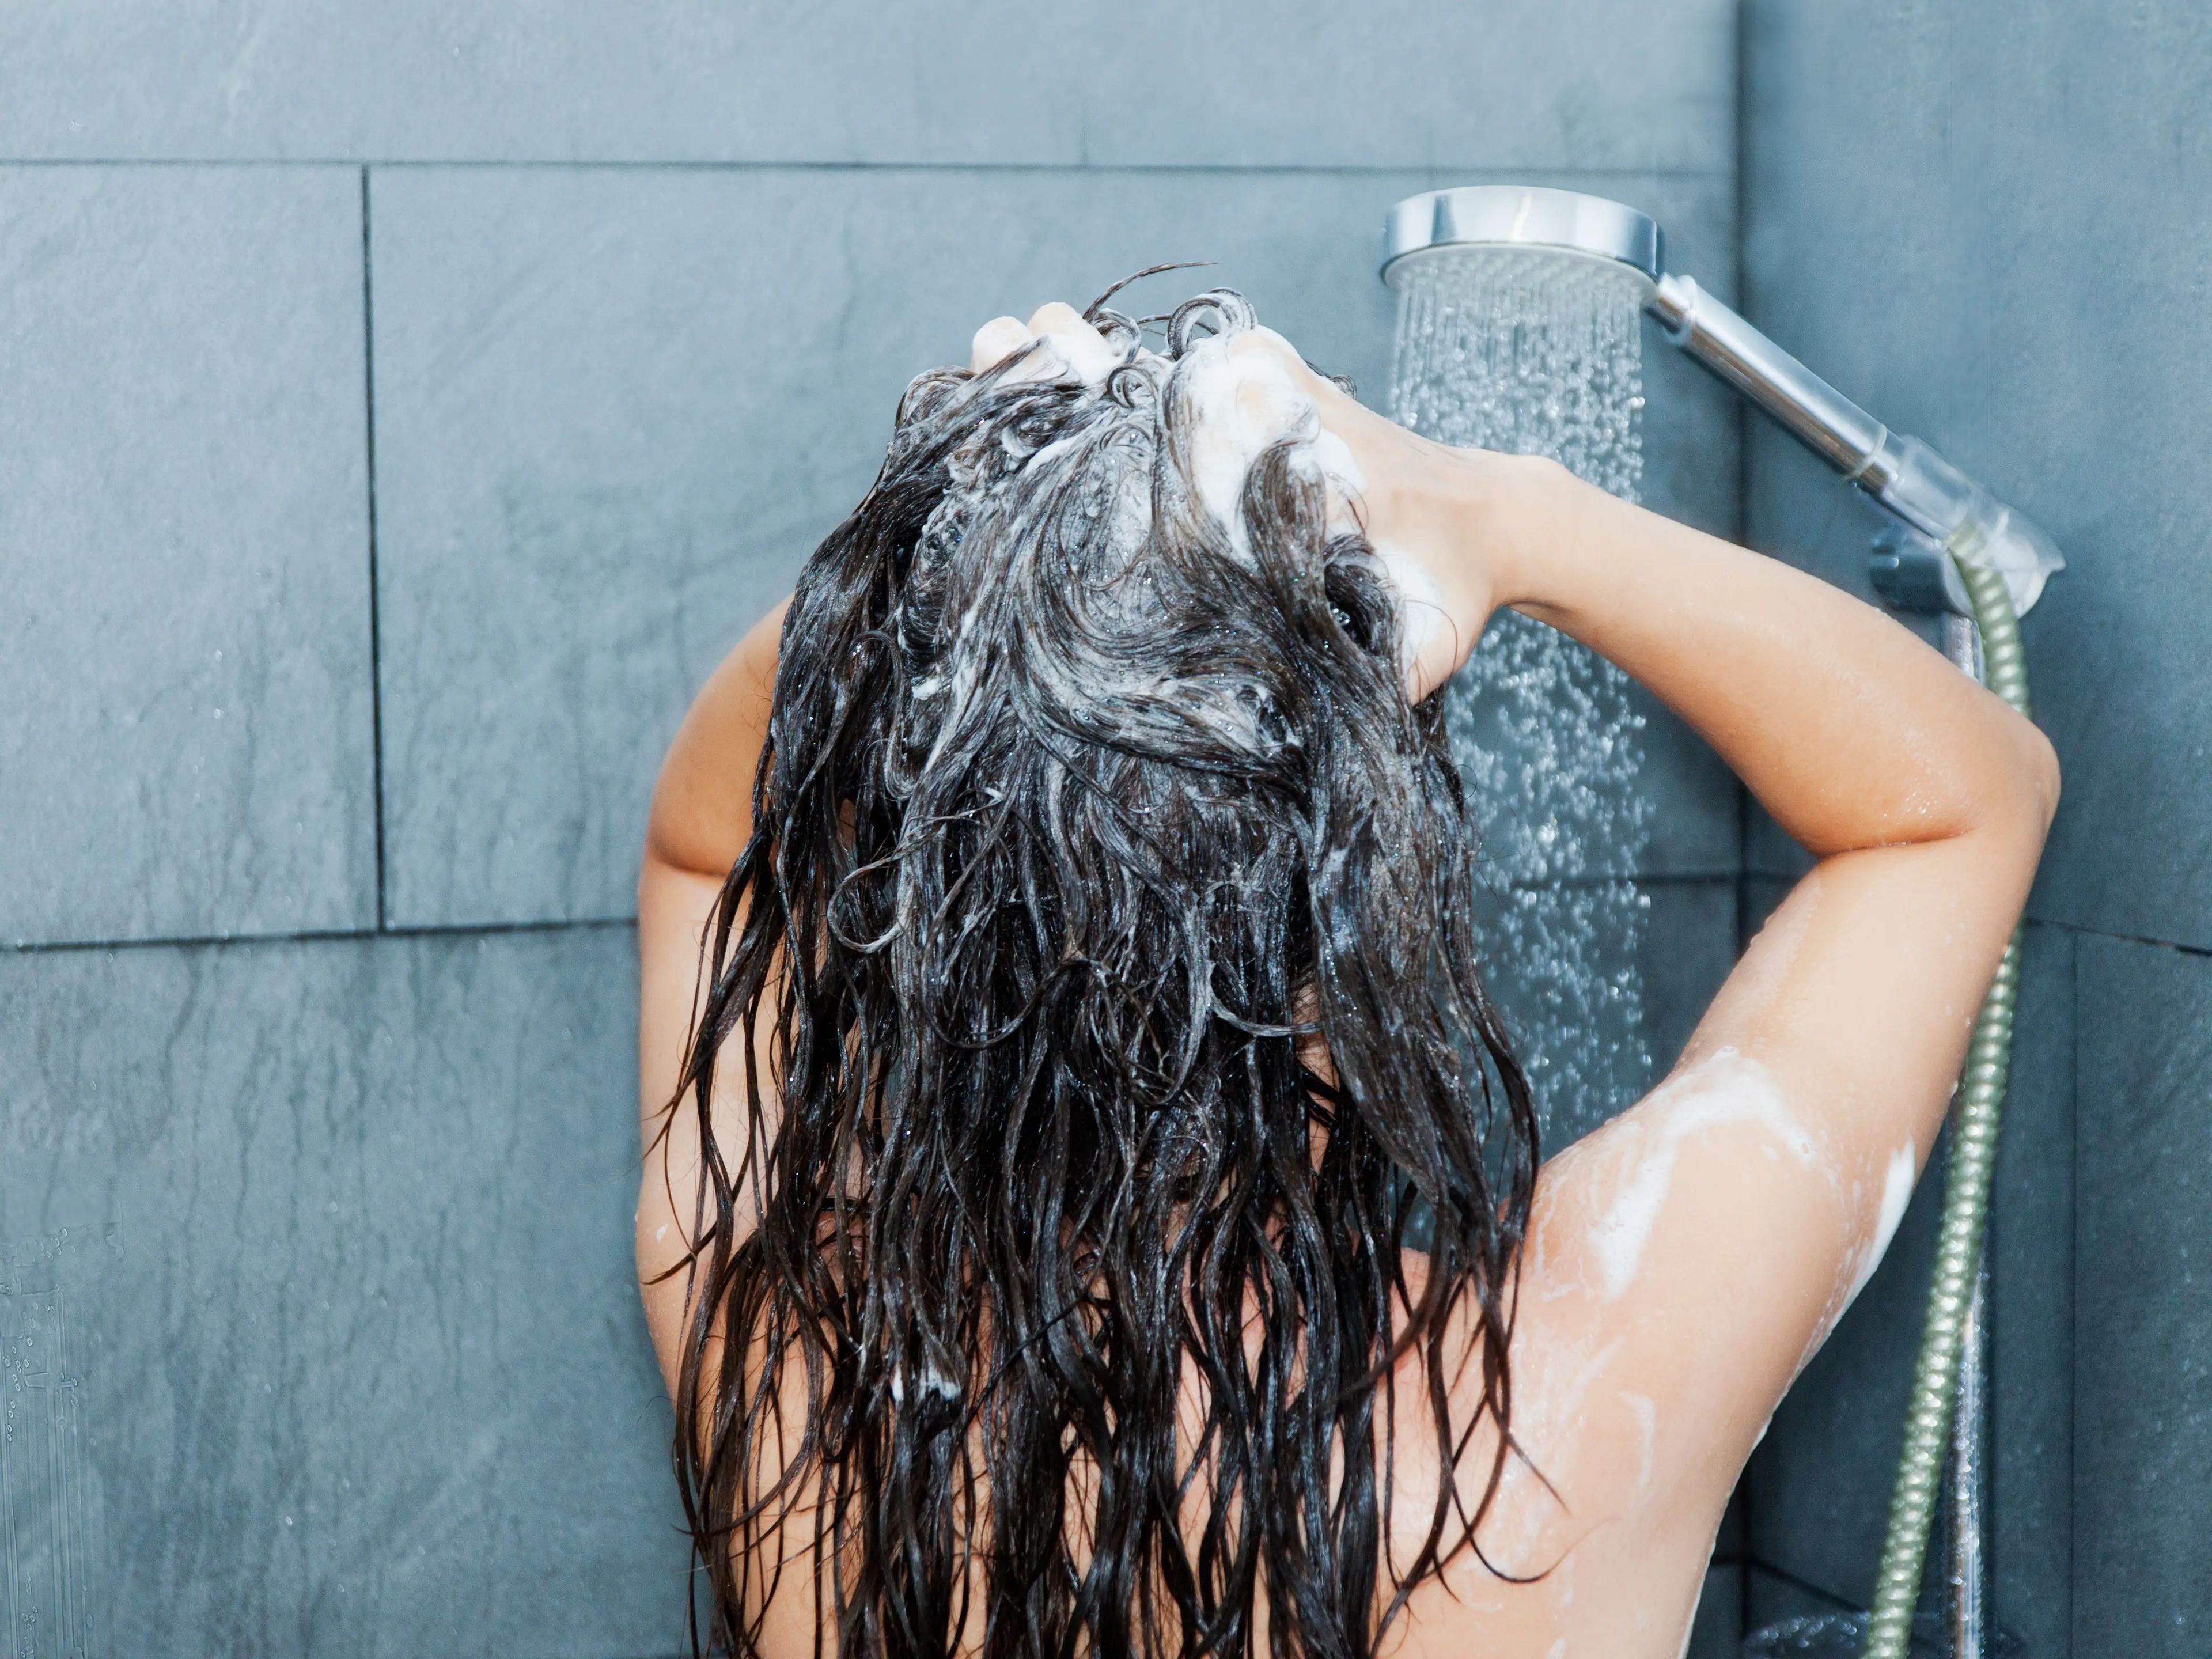 Lavarse la cara en la ducha puede resultar efectivo.